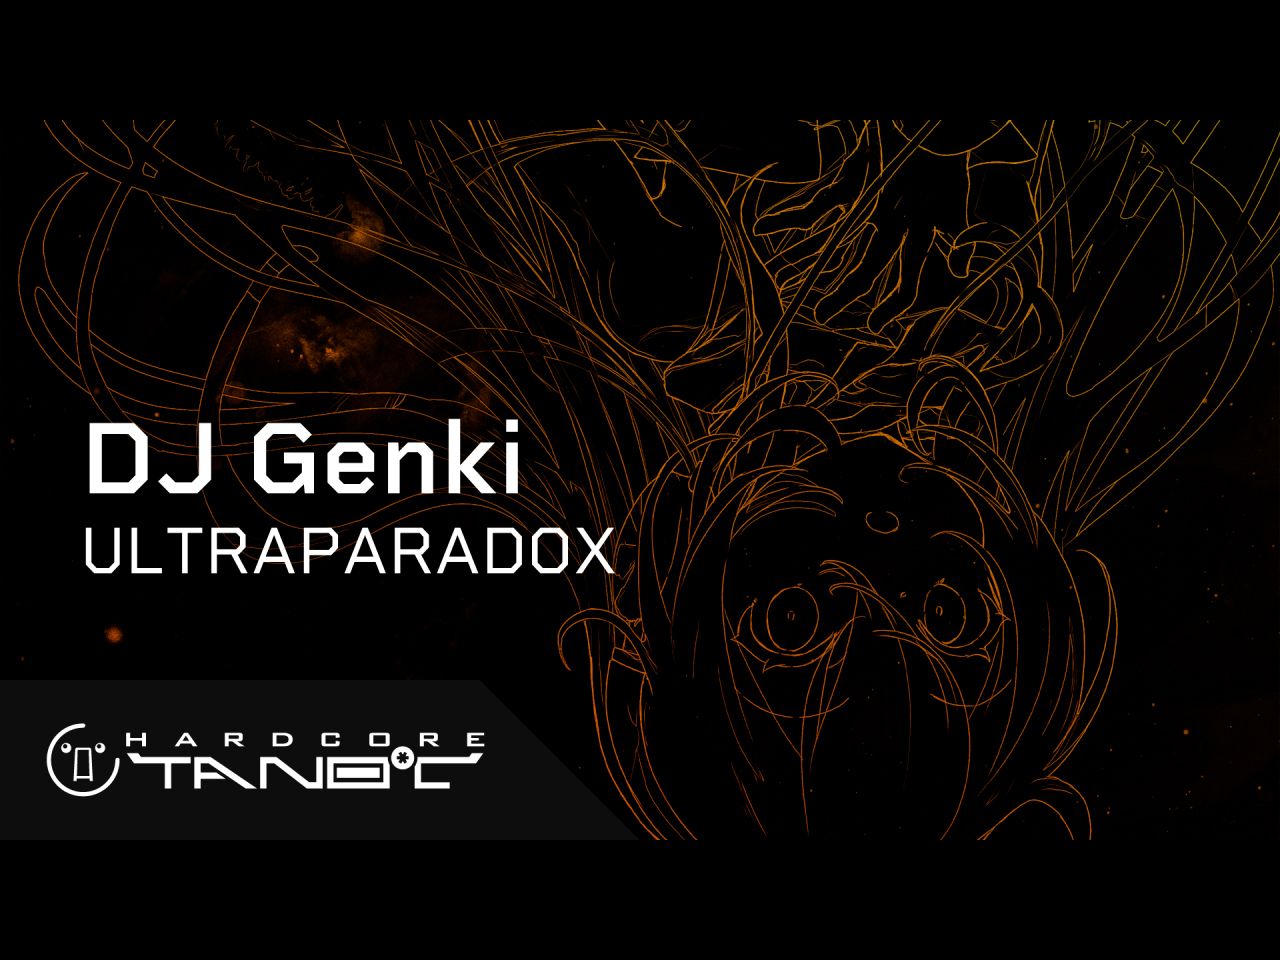 【新曲】DJ Genki - ULTRAPARADOX【HARDCORE TANO*C】